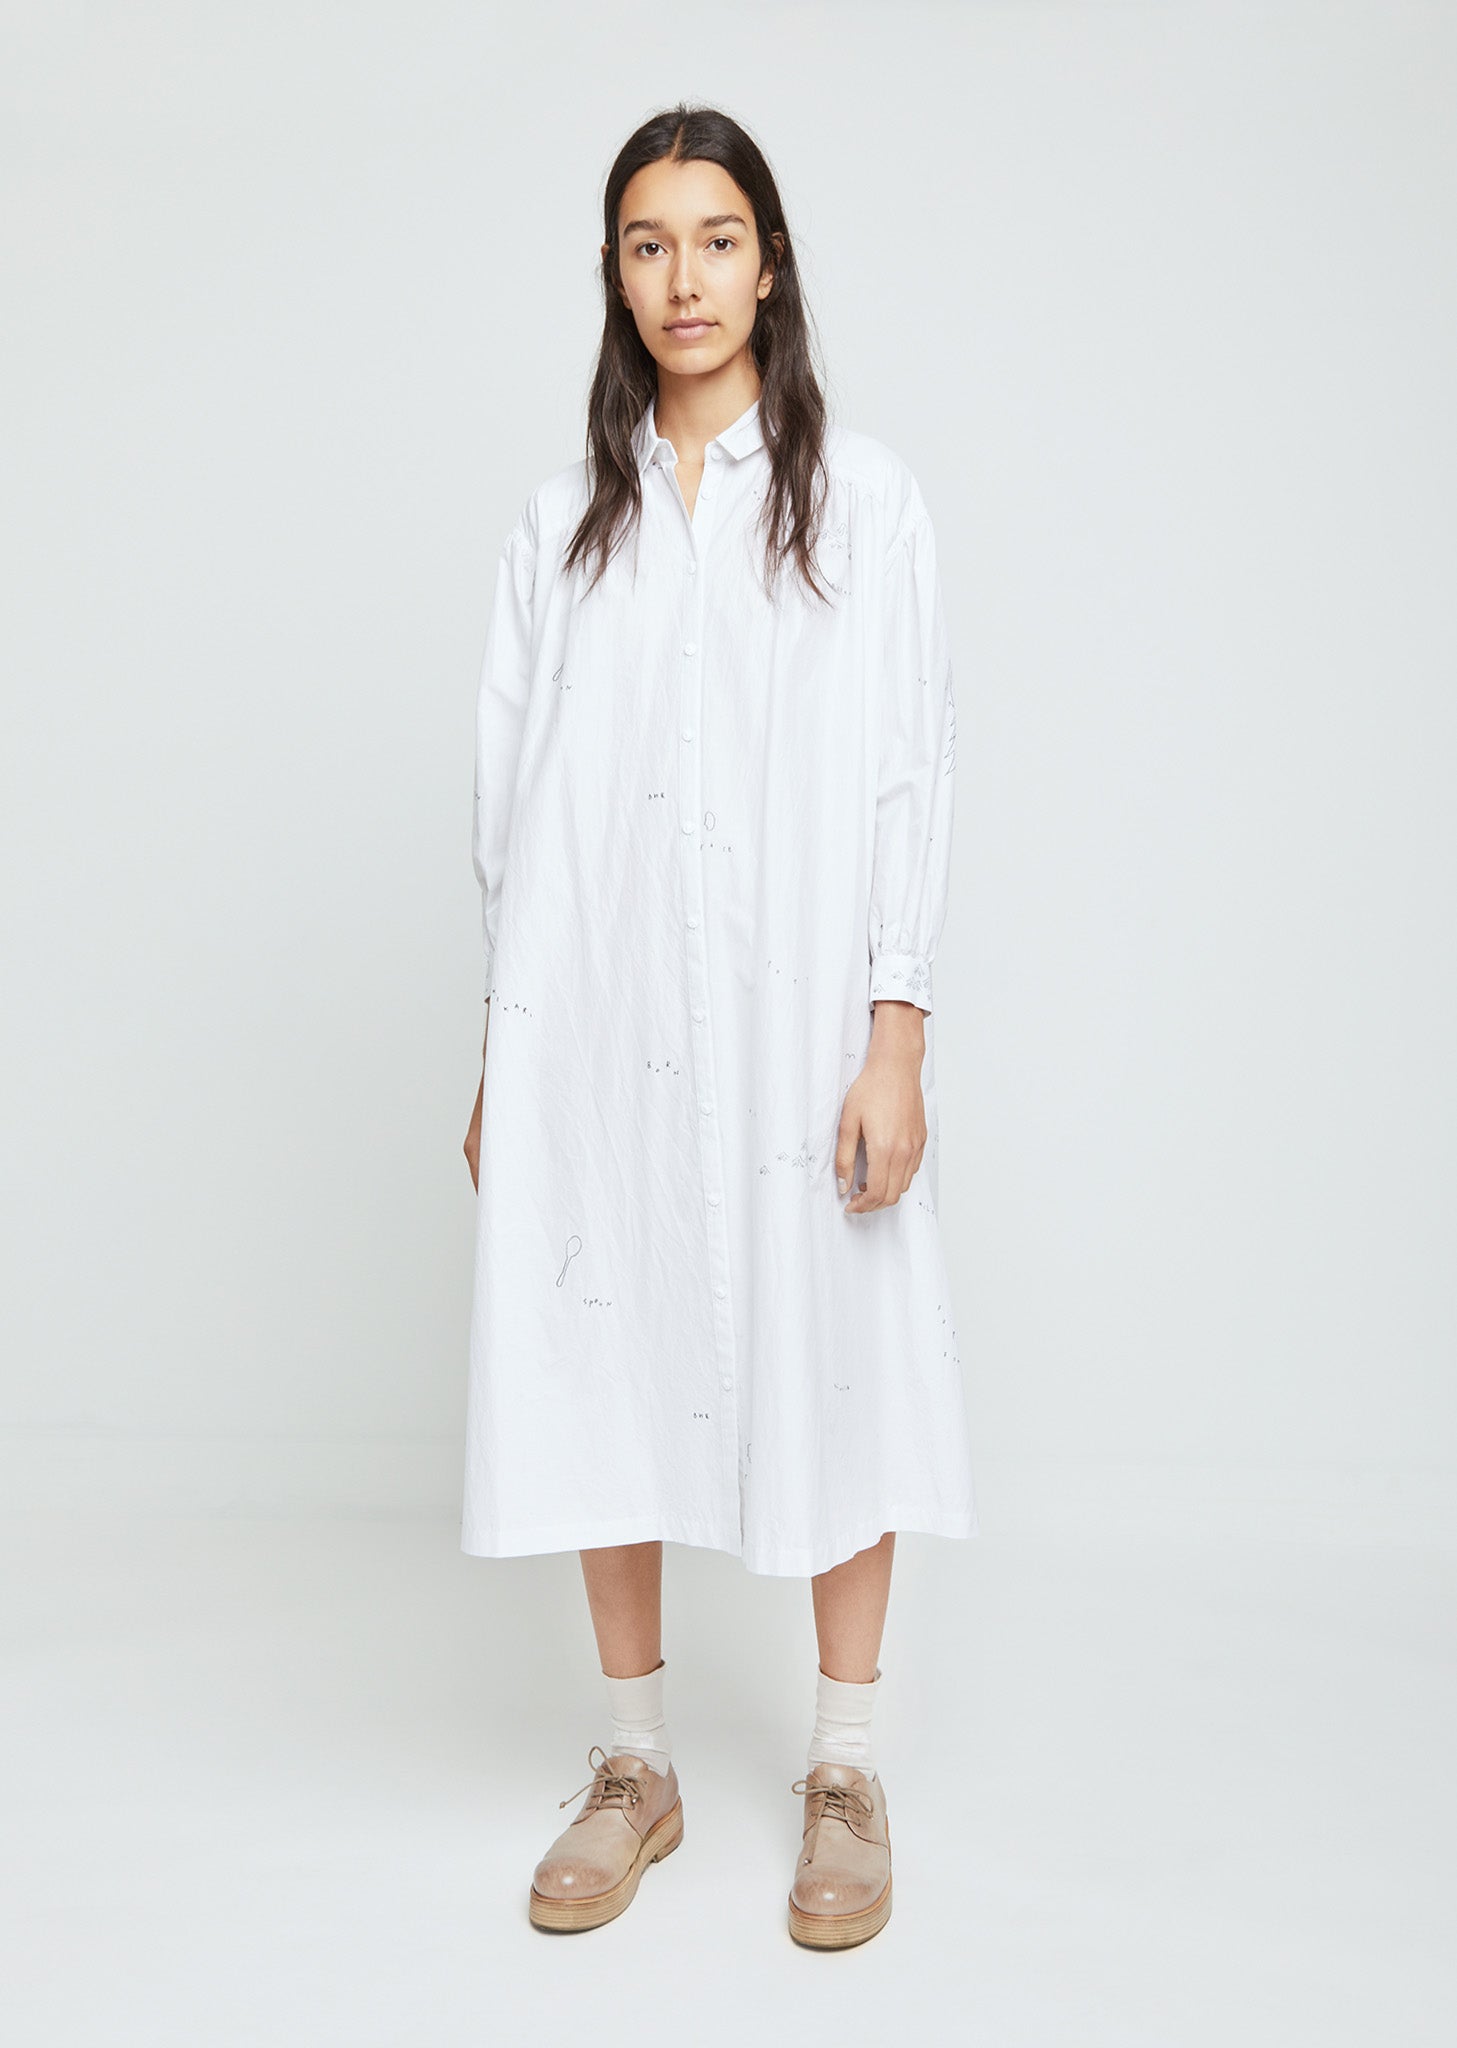 Whisper Cotton Silk Shirtdress by Minä Perhonen- La Garçonne